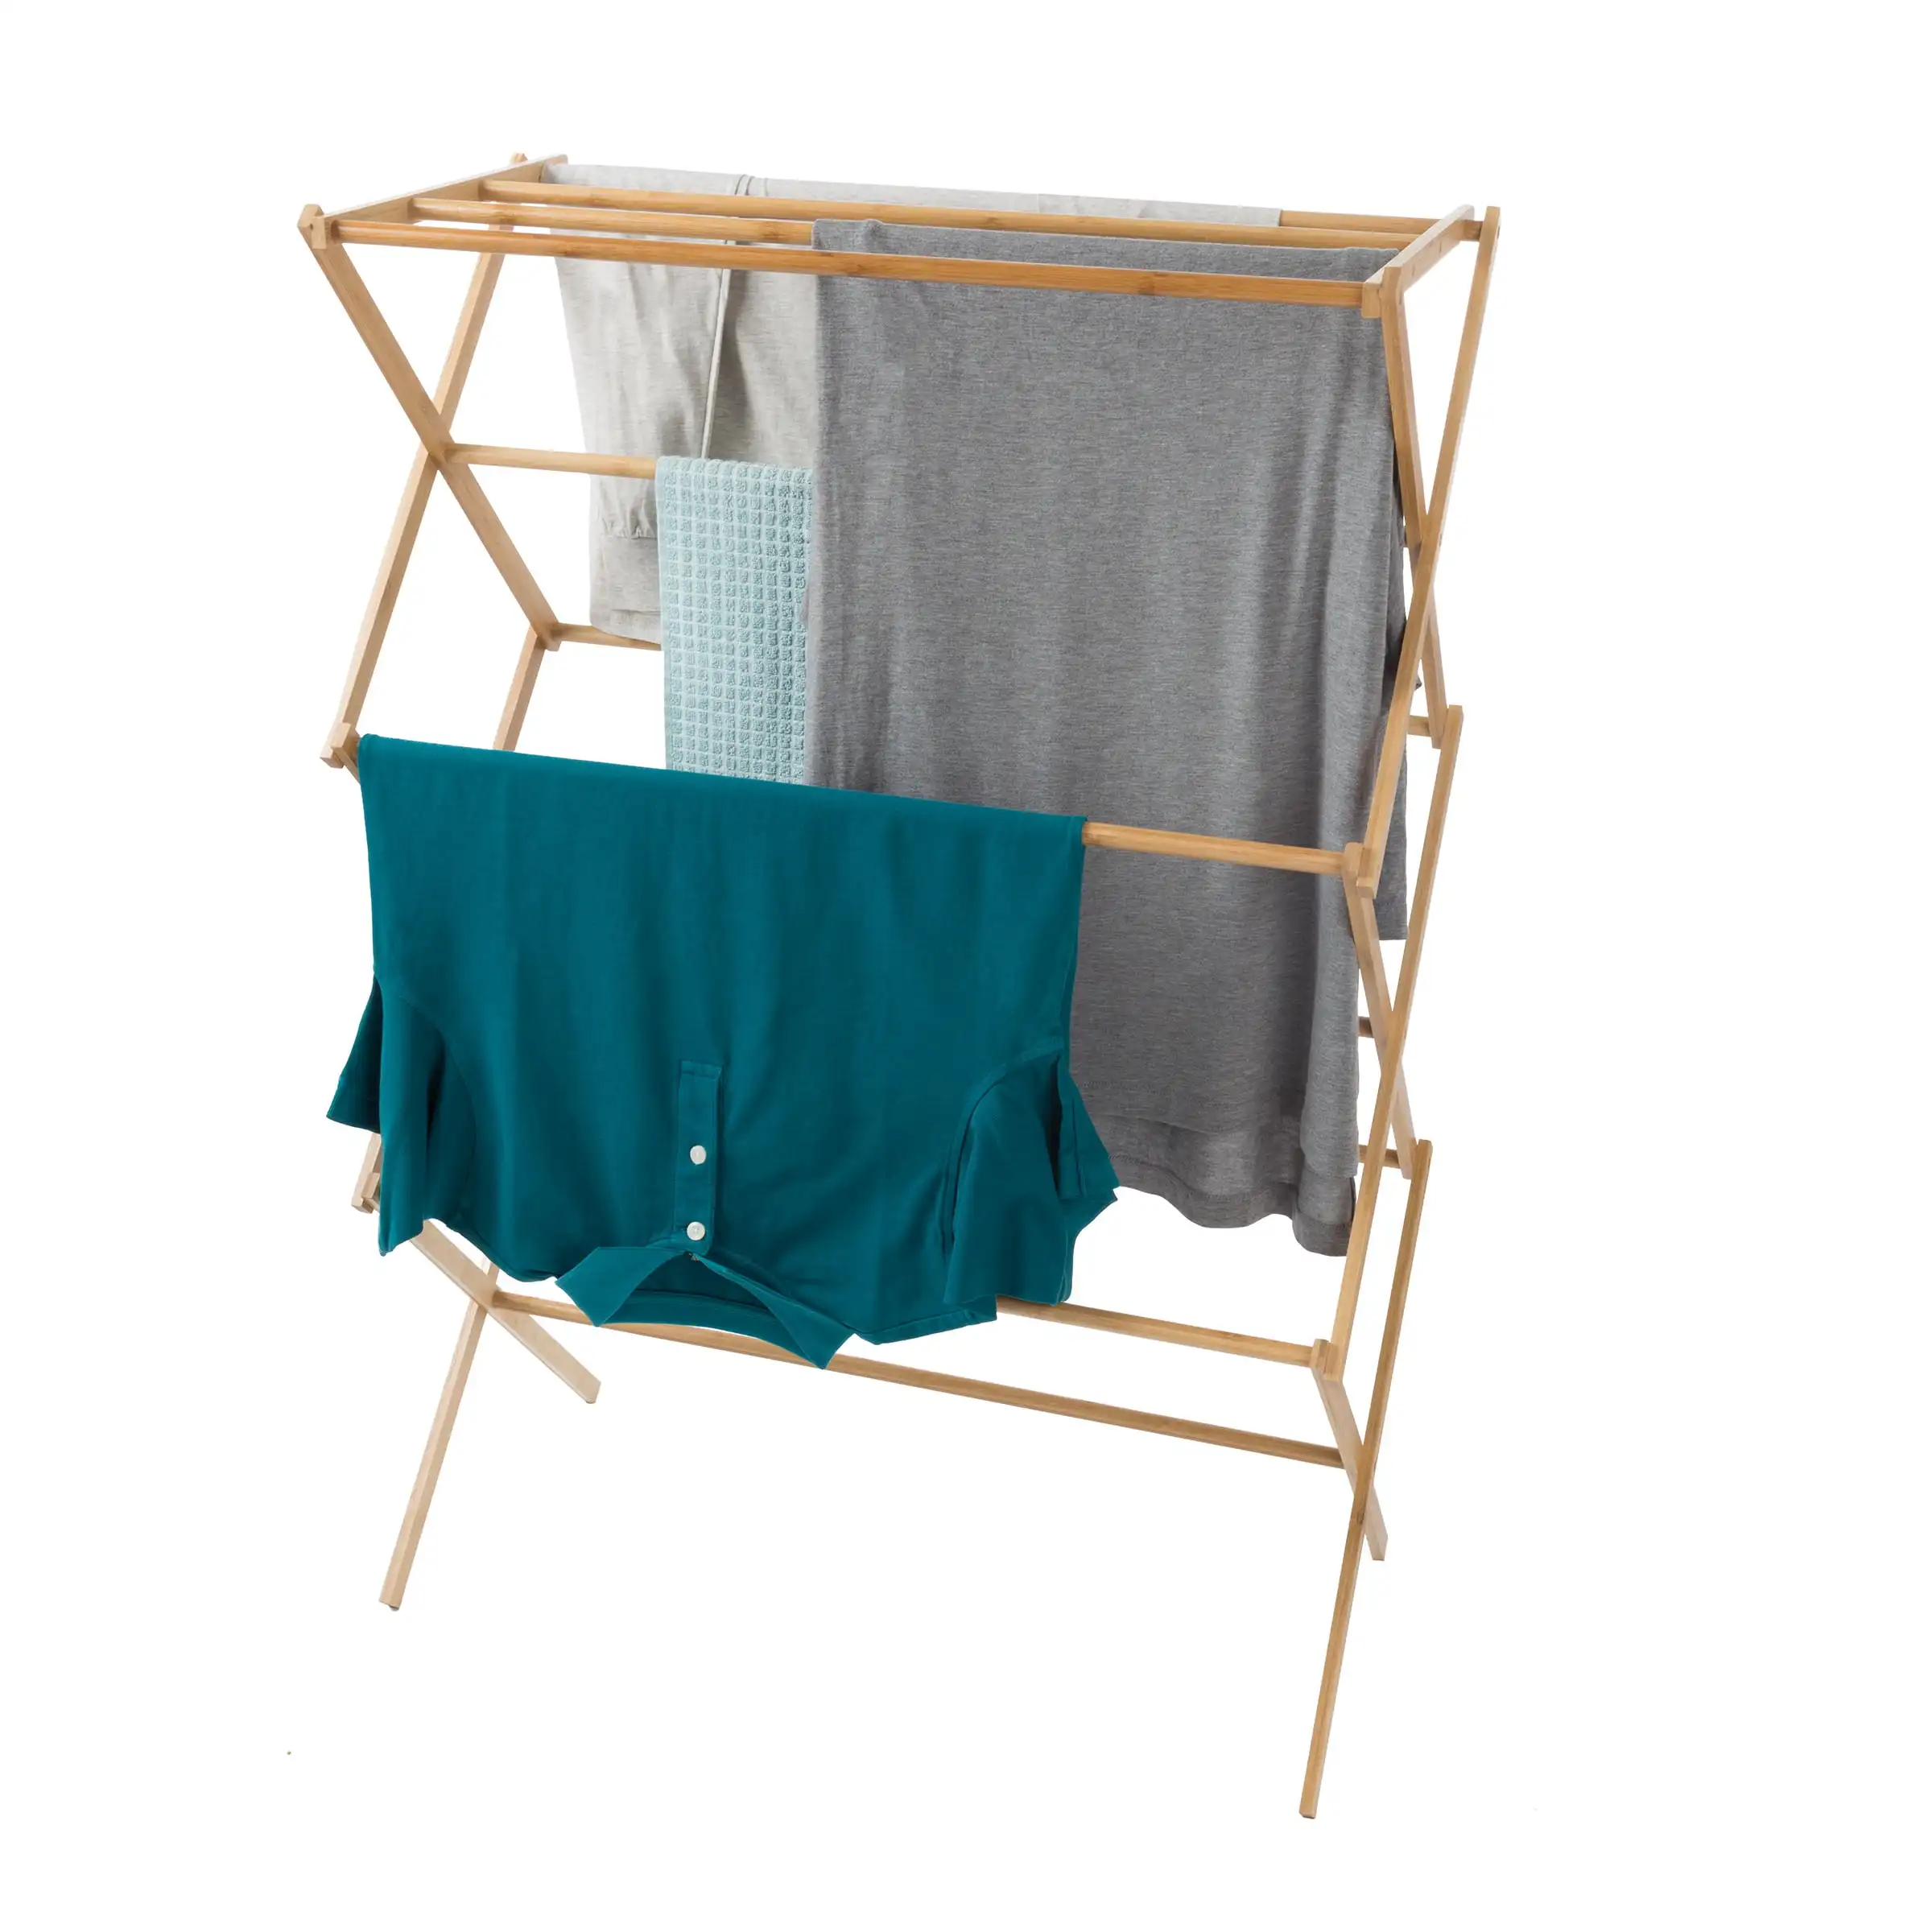 

Портативная сушилка для одежды из бамбука-Складная и компактная для использования дома и на улице от Lavish Home